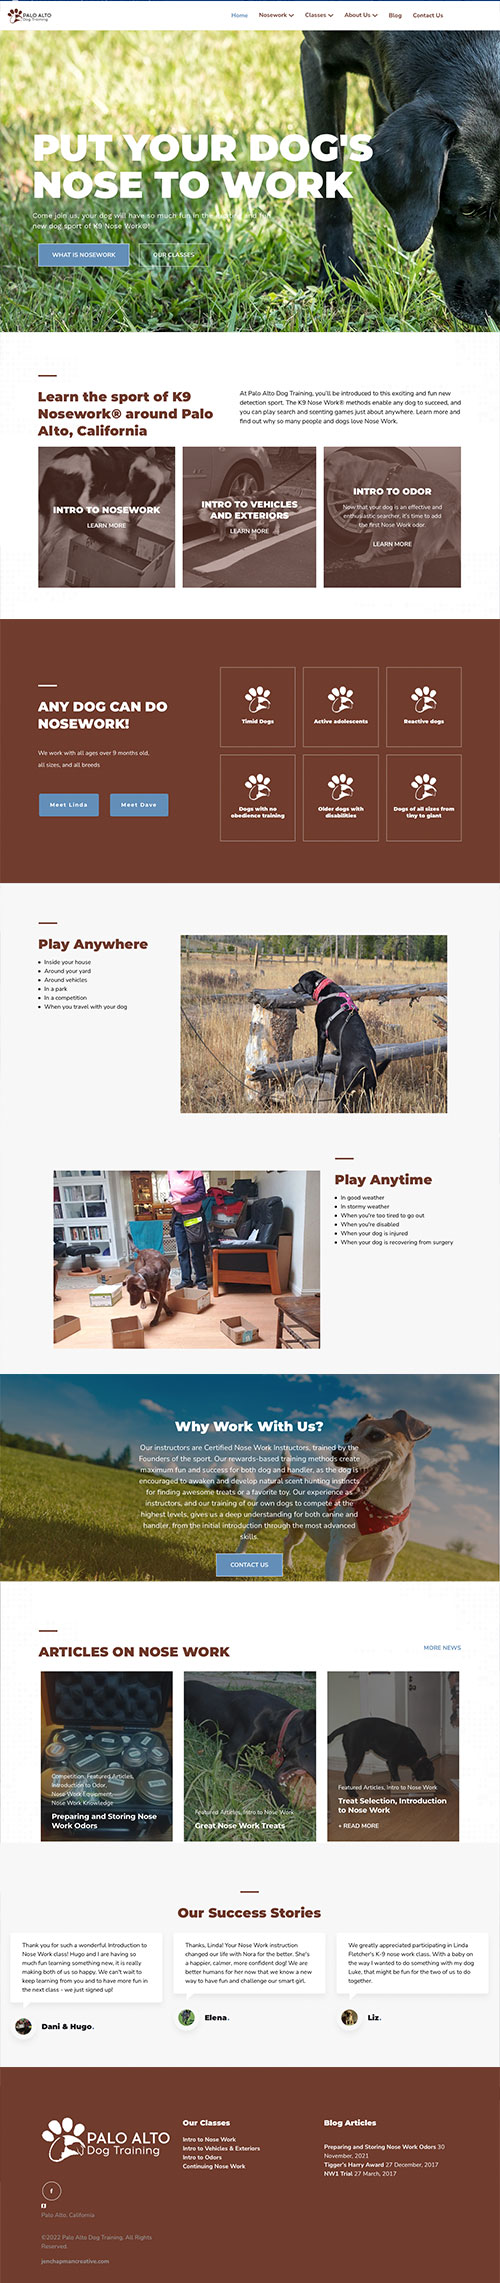 Dog trainer website design sample